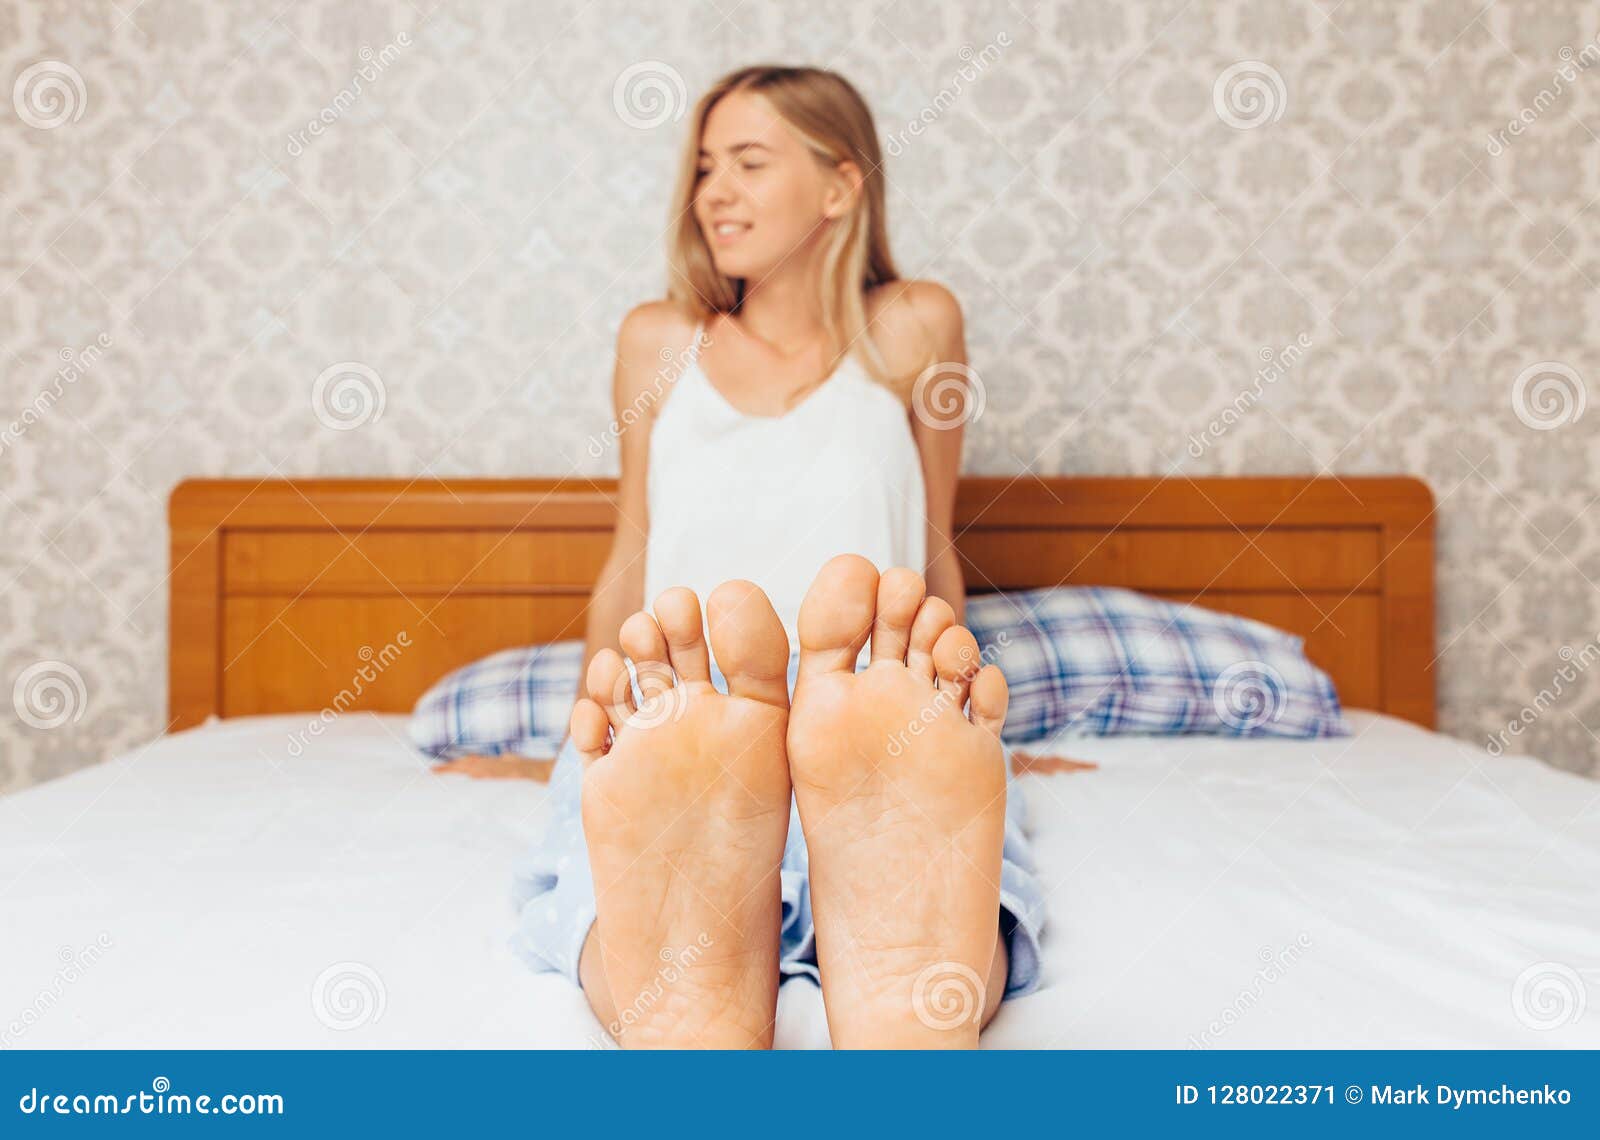 girls feet in bed